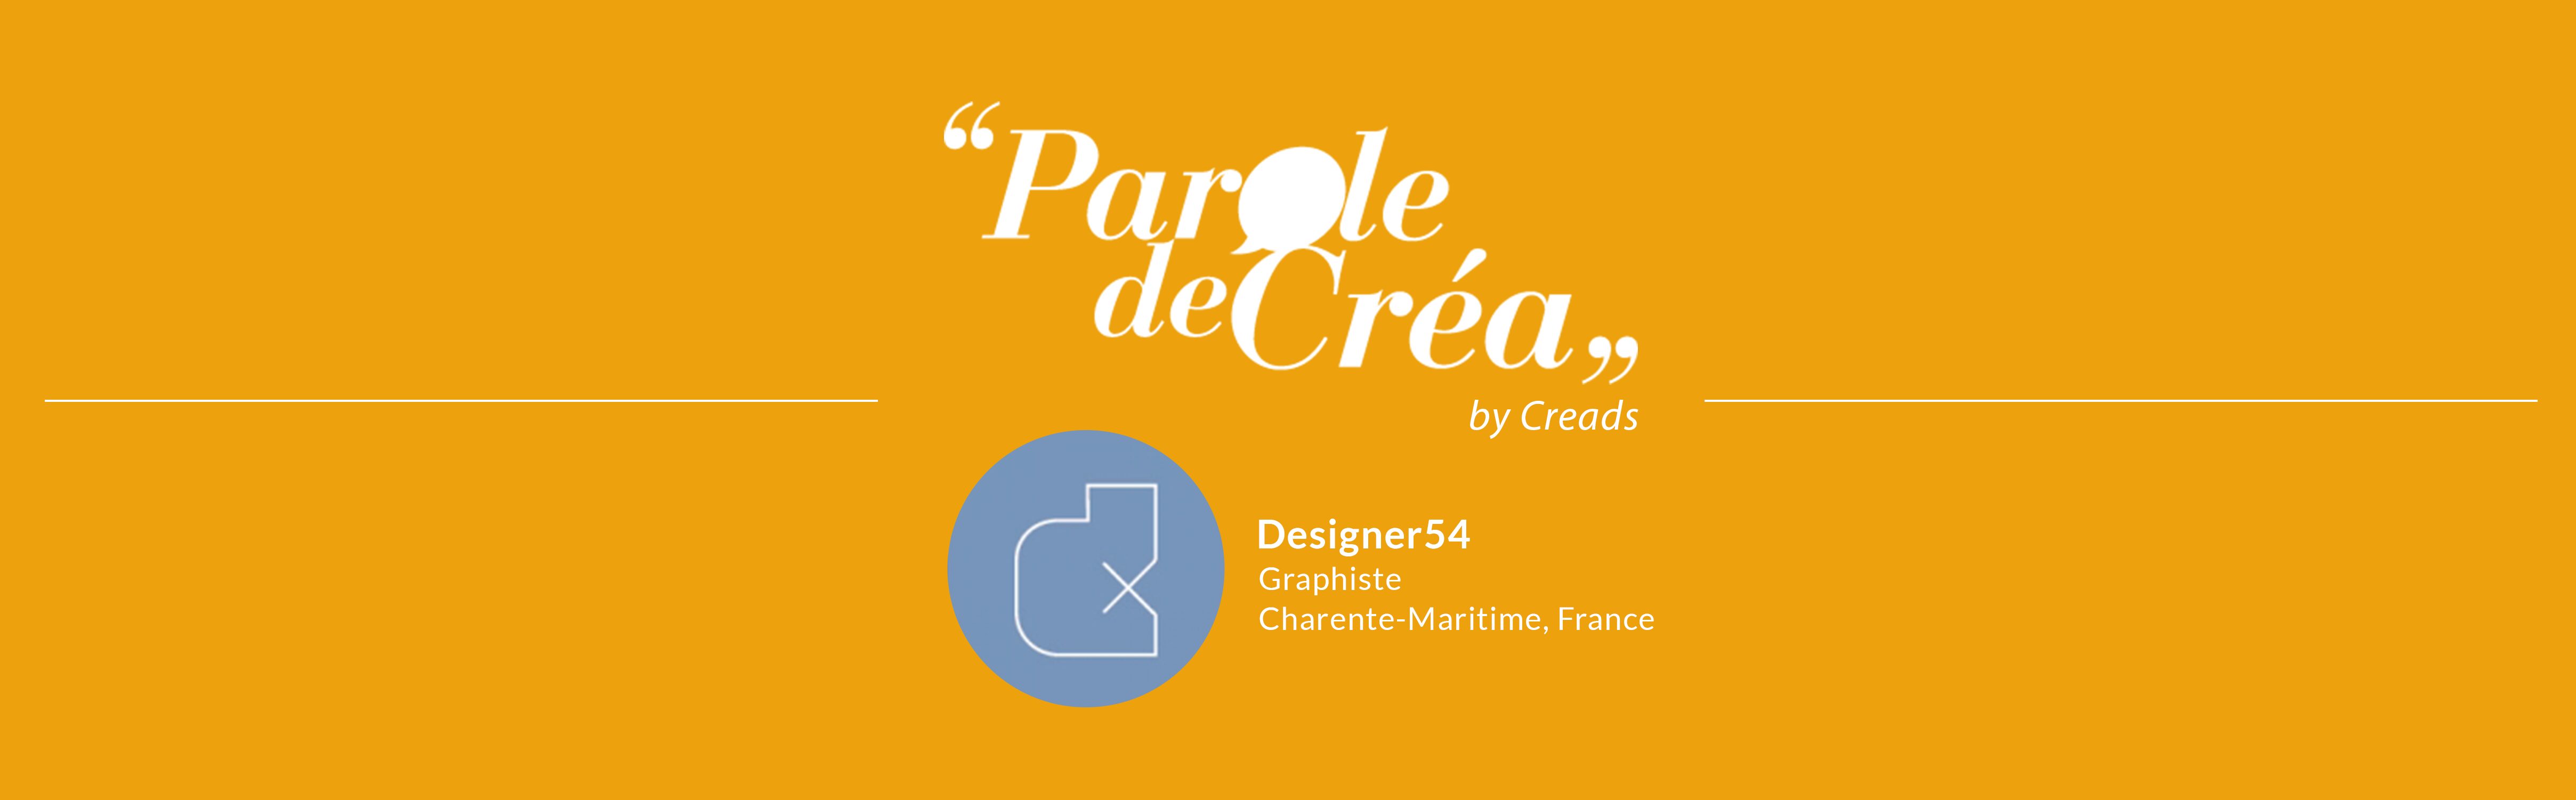 Designer54 graphiste freelance france